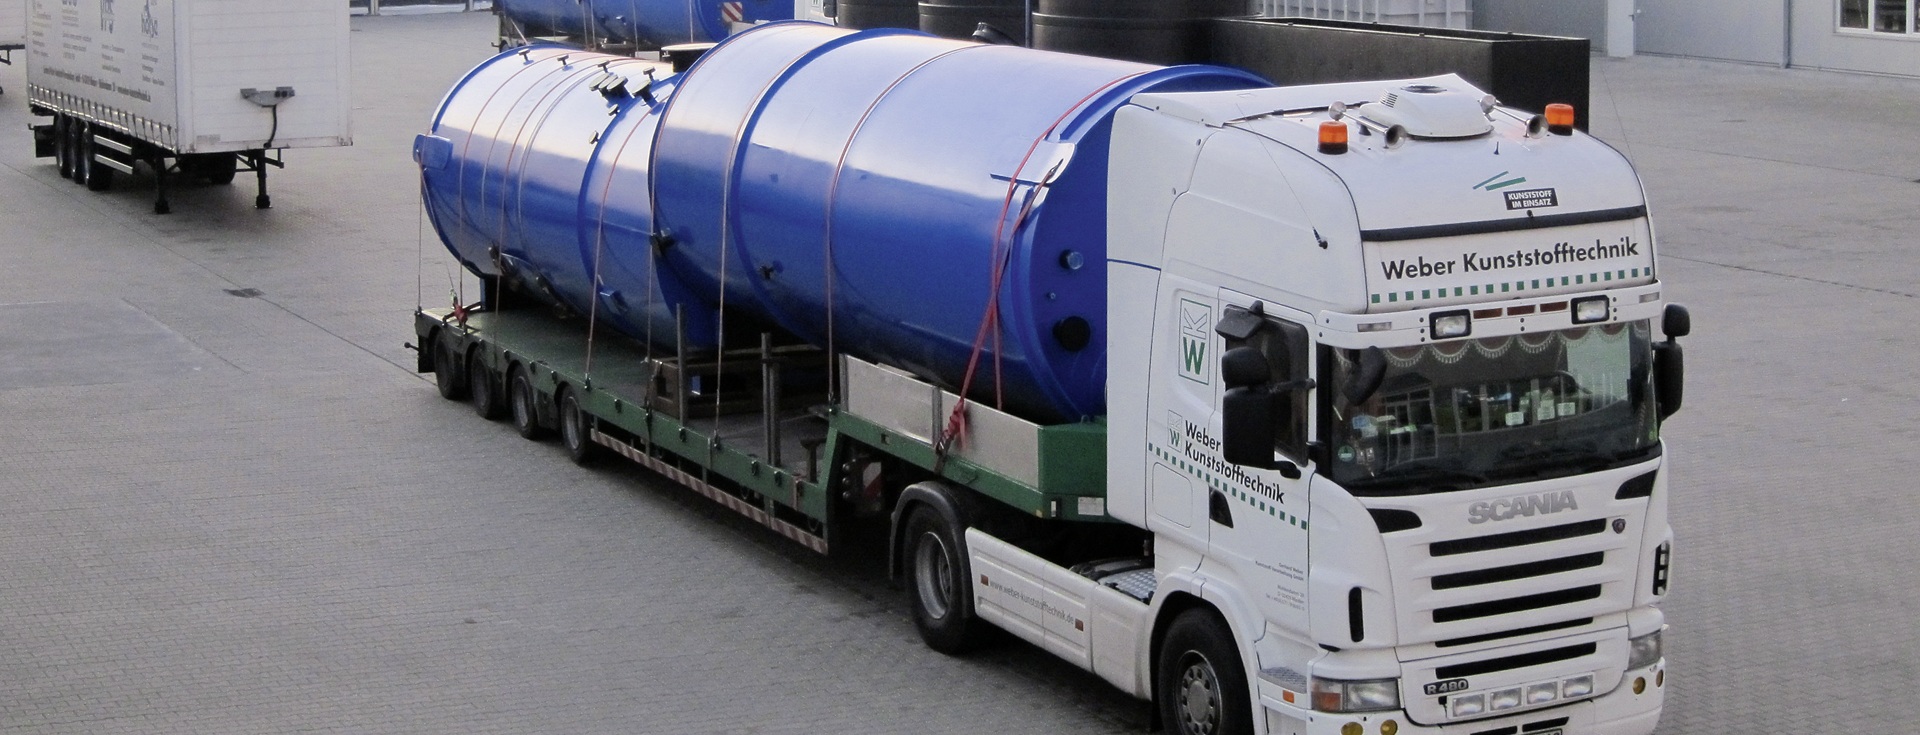 Logistik: Transport der Kunststoffbehälter mit Spezialfahrzeugen